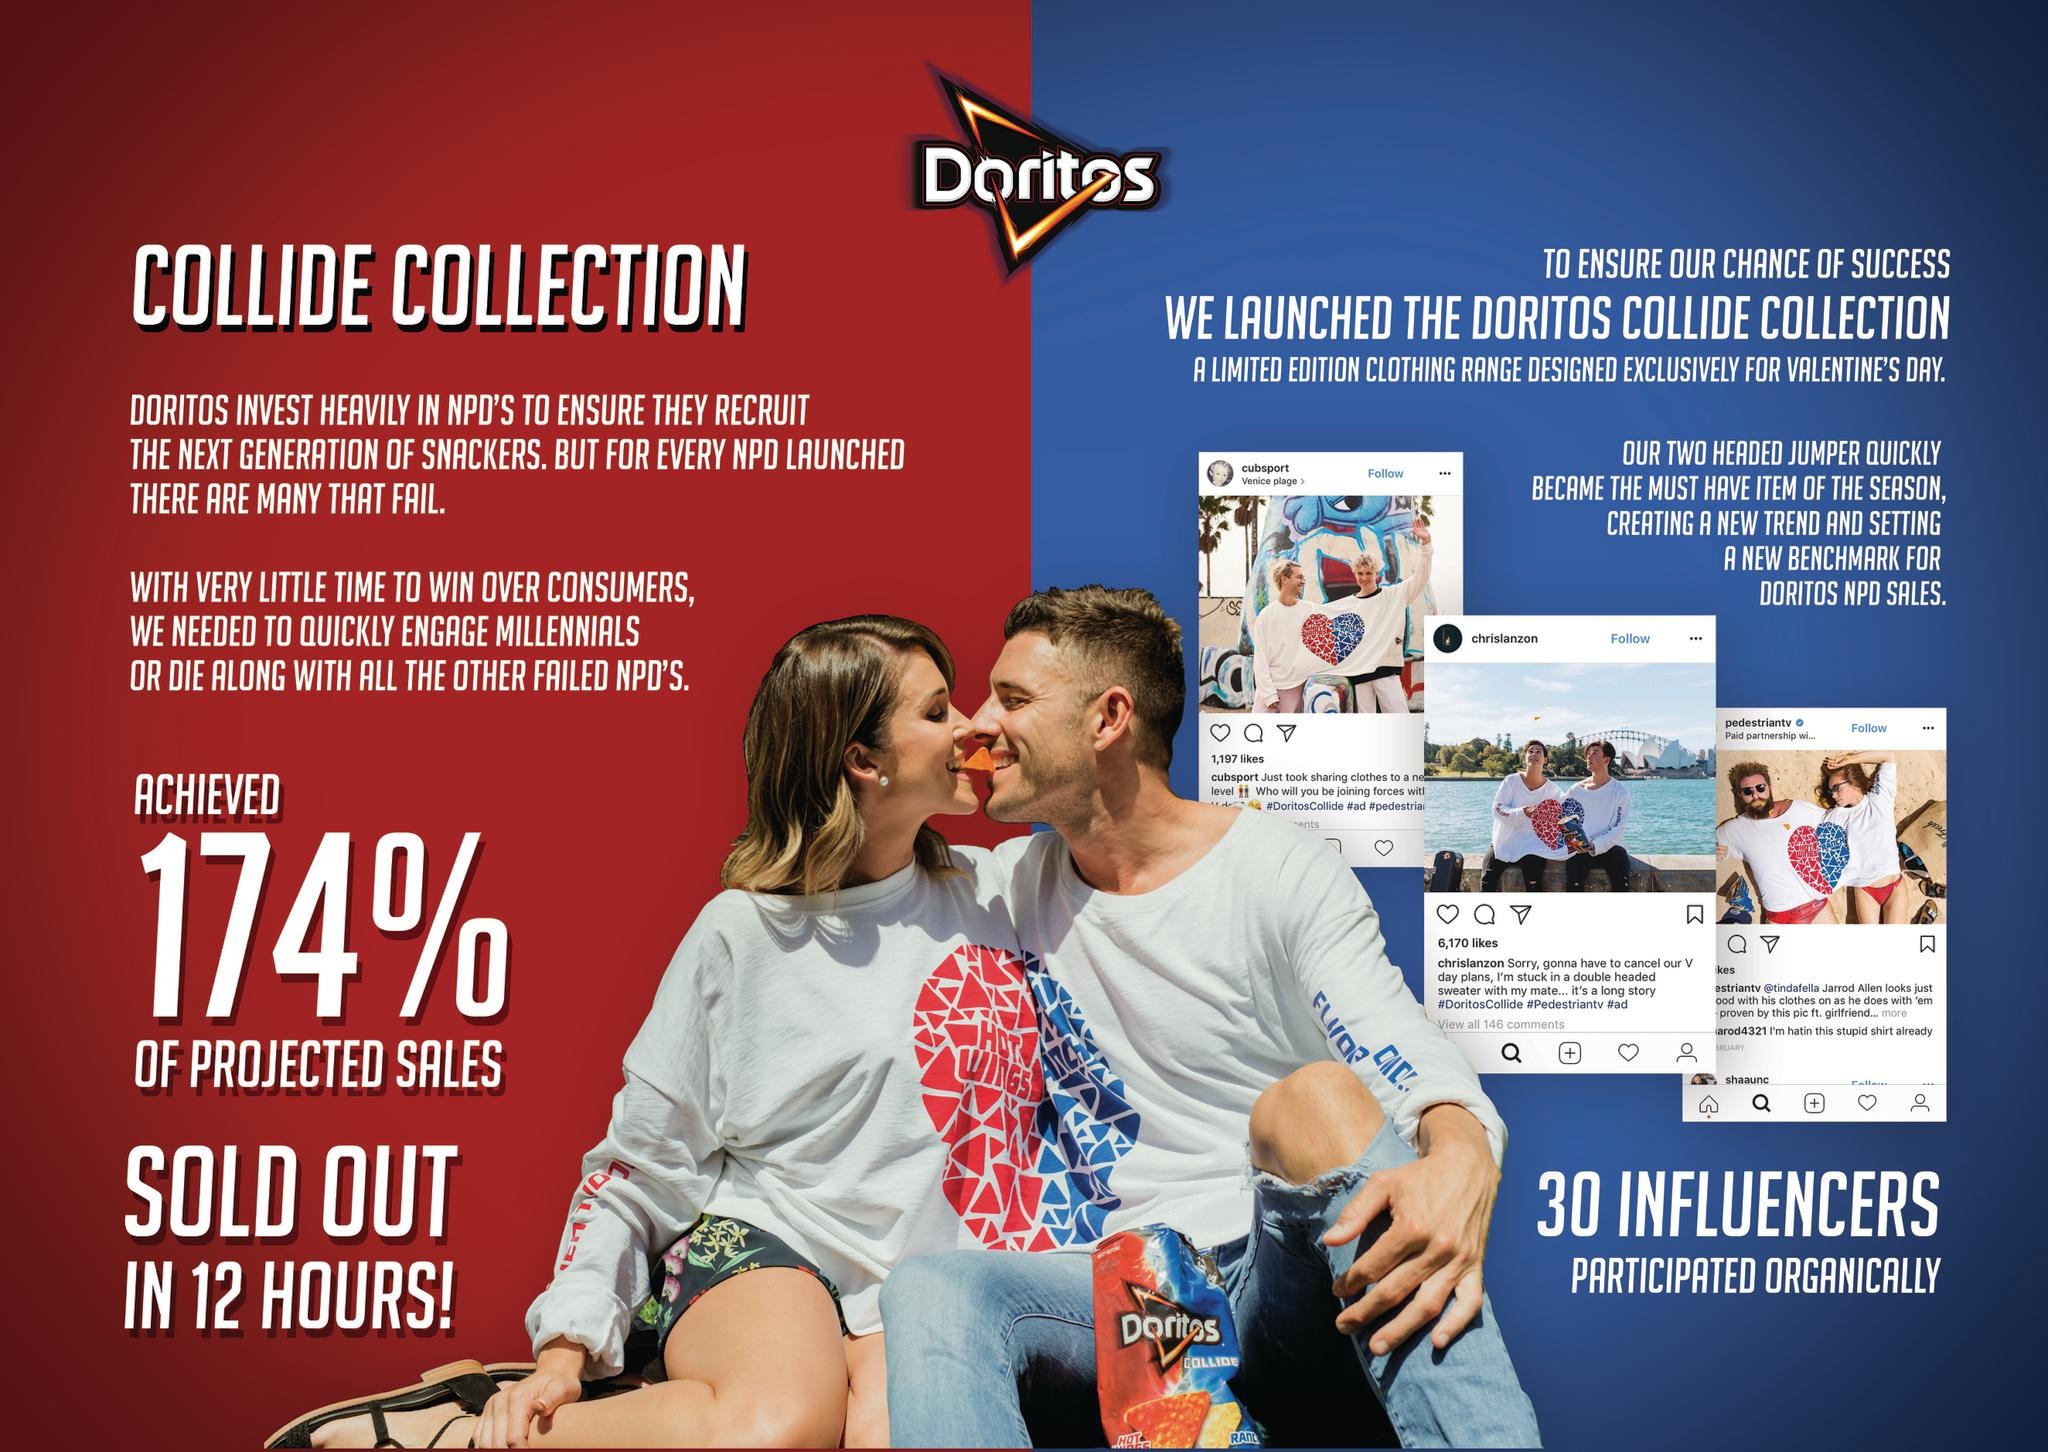 Doritos Collide Clothing Collection